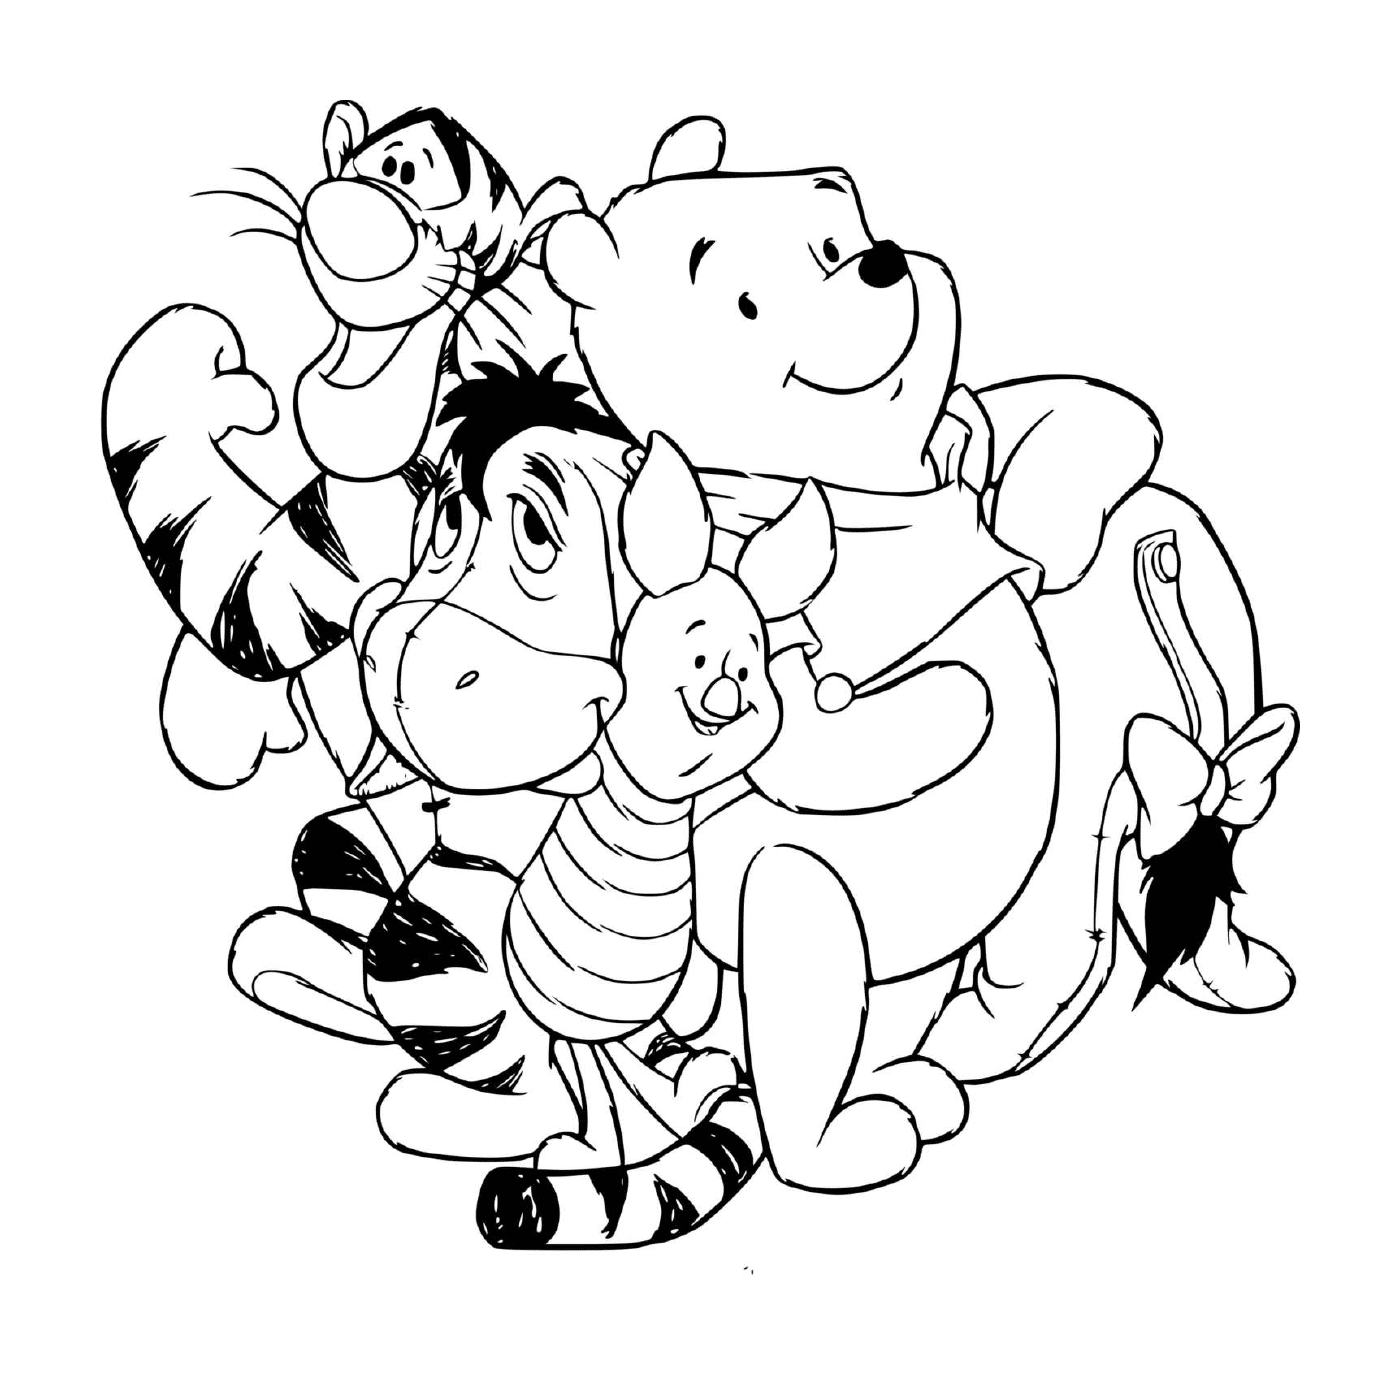  Уинни медведь с Тигру, Буррикет и Порцинет 